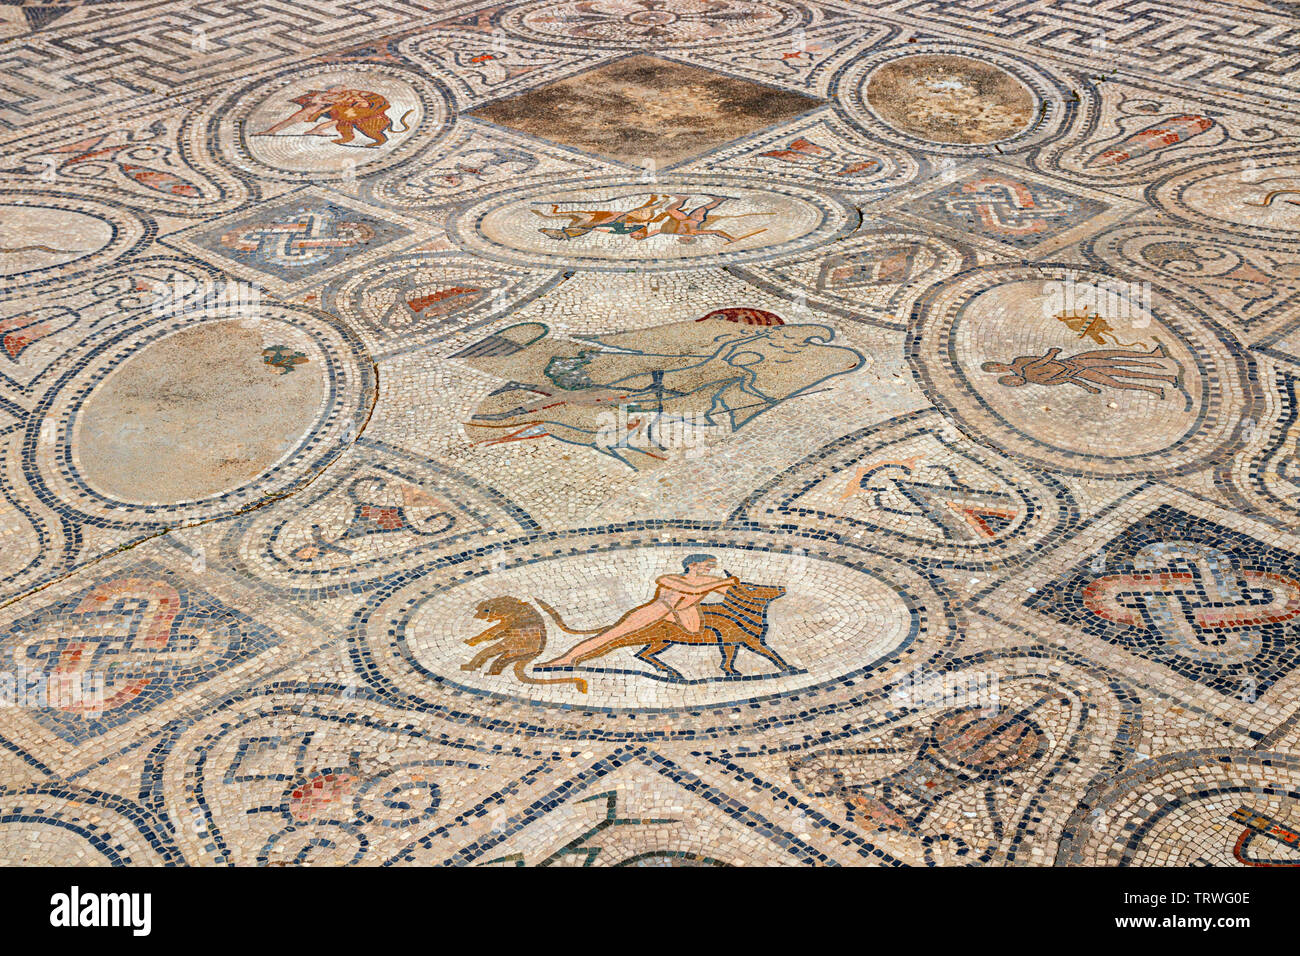 Variopinto mosaico pavimentale nella casa di Orfeo, parte dell'antica città romana Volubilis, Marocco. Il mosaico raffigura le fatiche di Ercole. Foto Stock